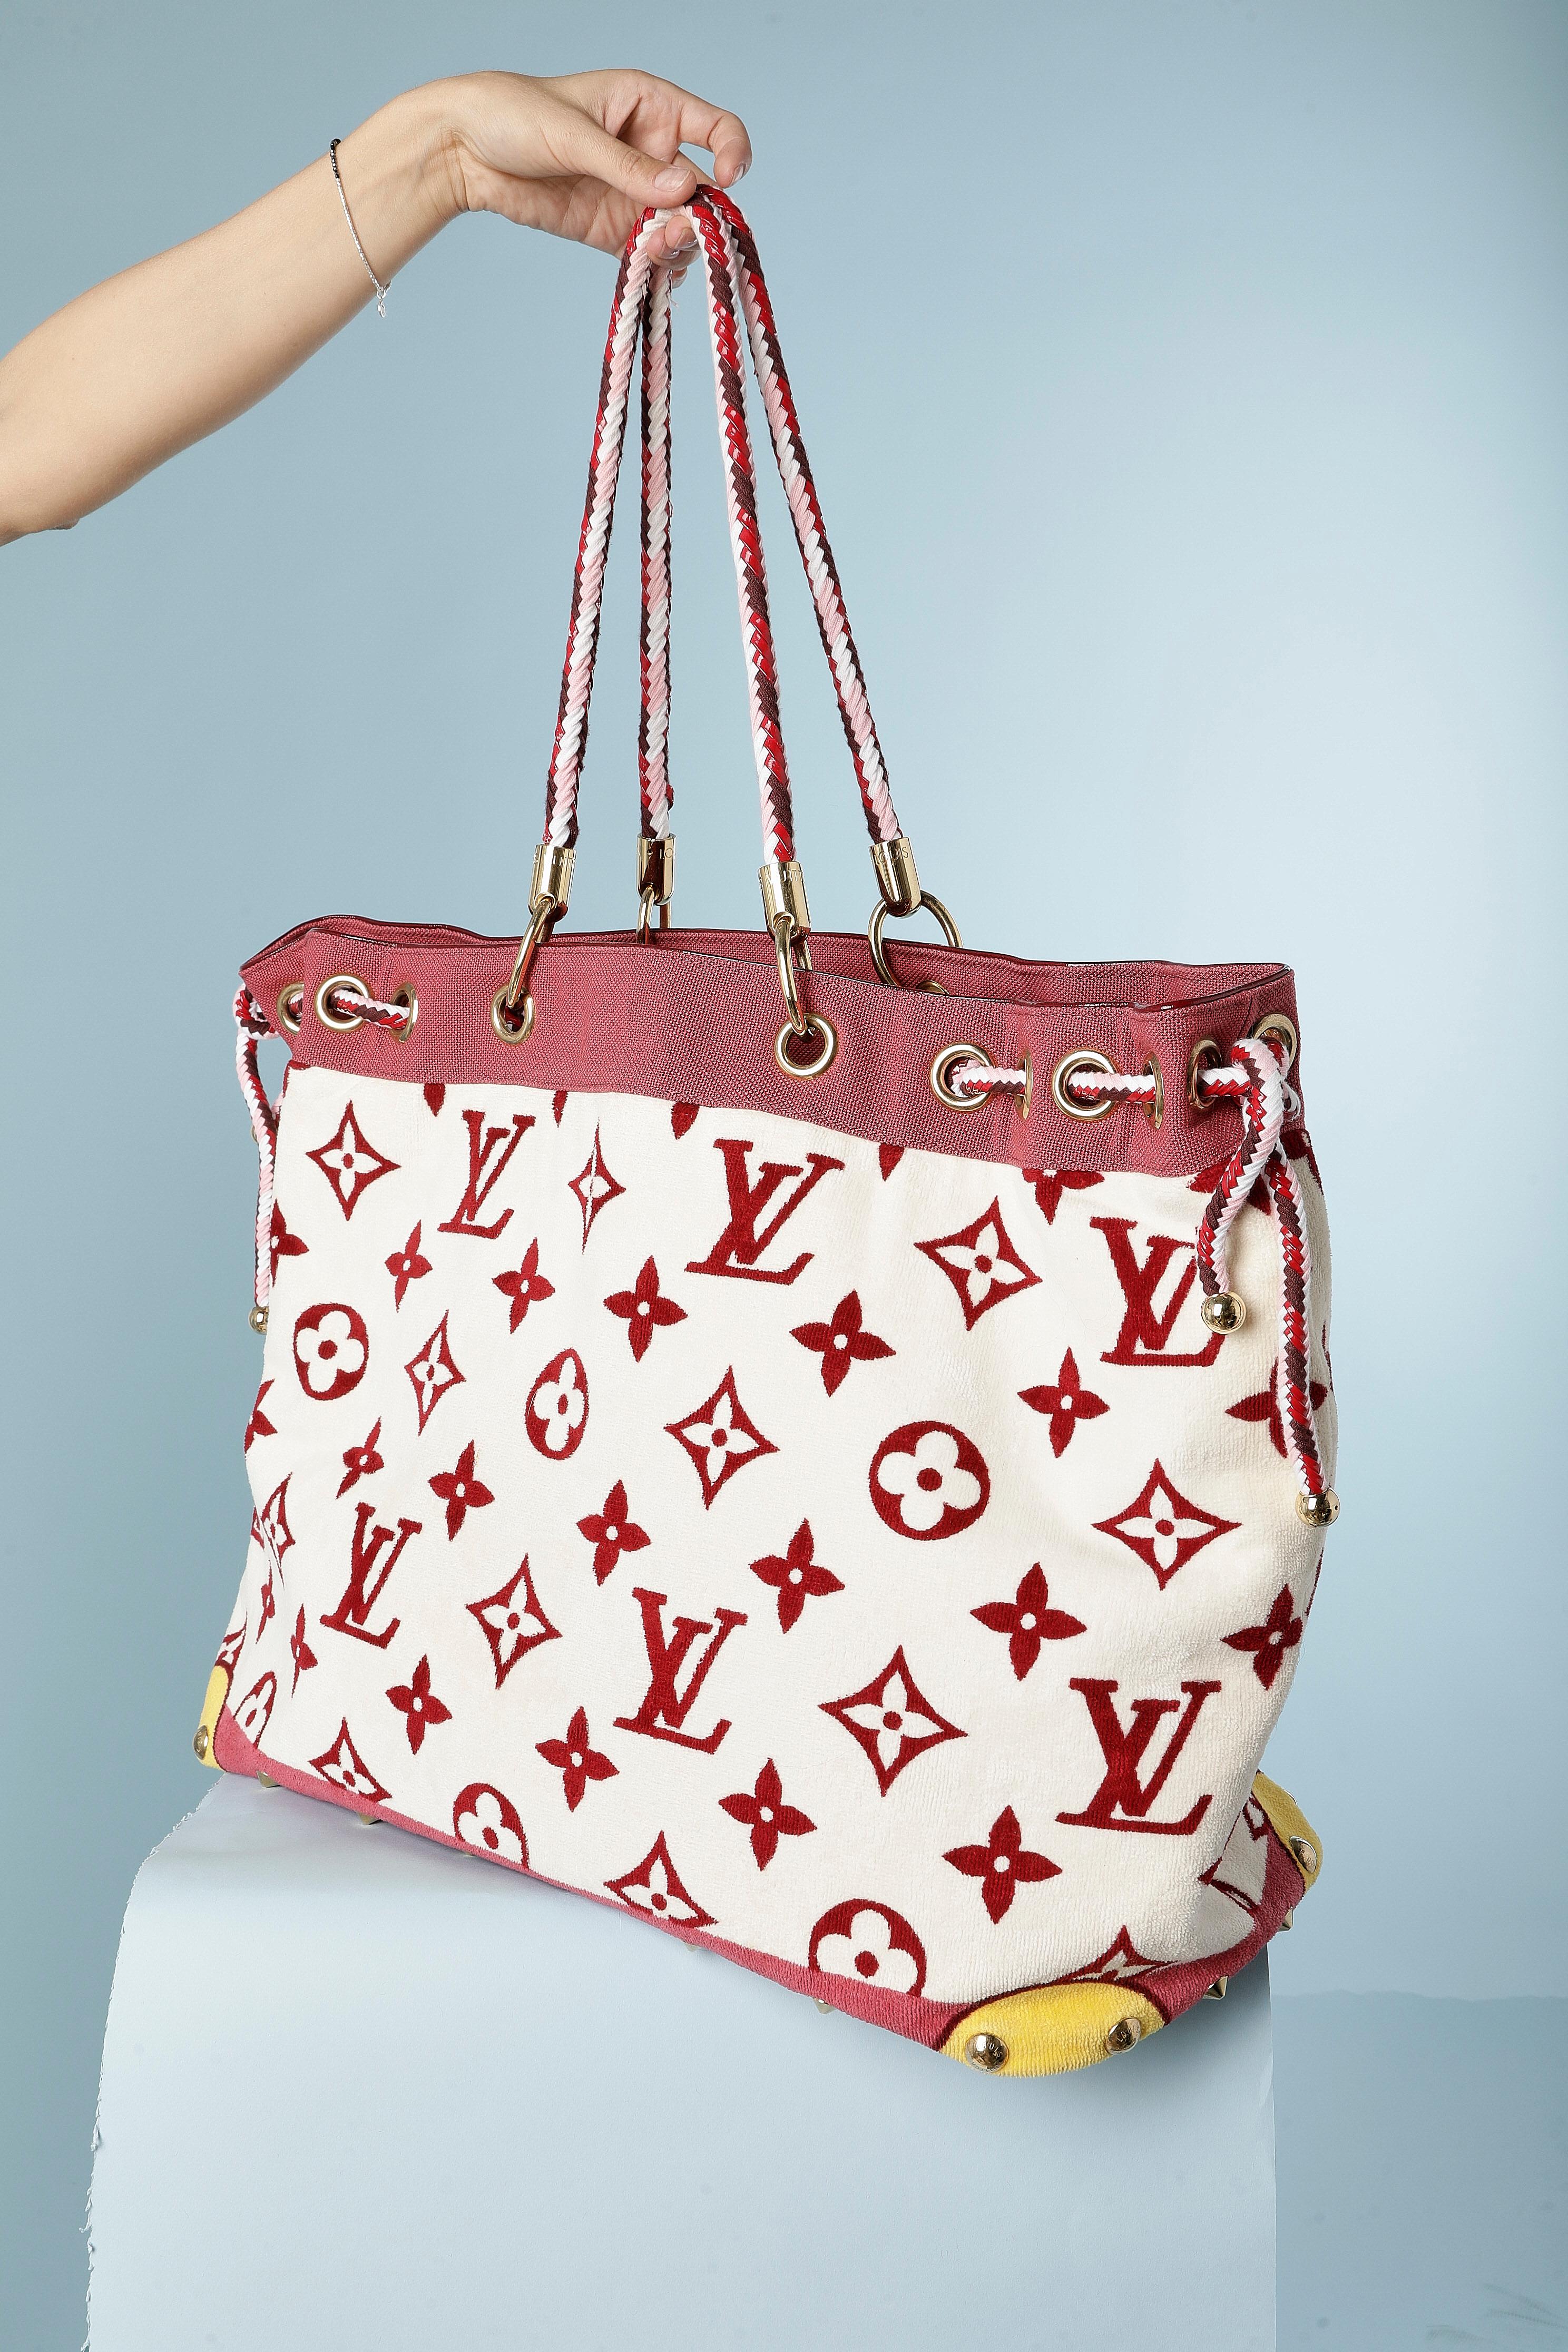 Louis Vuitton Beach Bags - 8 For Sale on 1stDibs  lv beach bag, louis  vuitton beach tote, louis vuitton clear beach bag